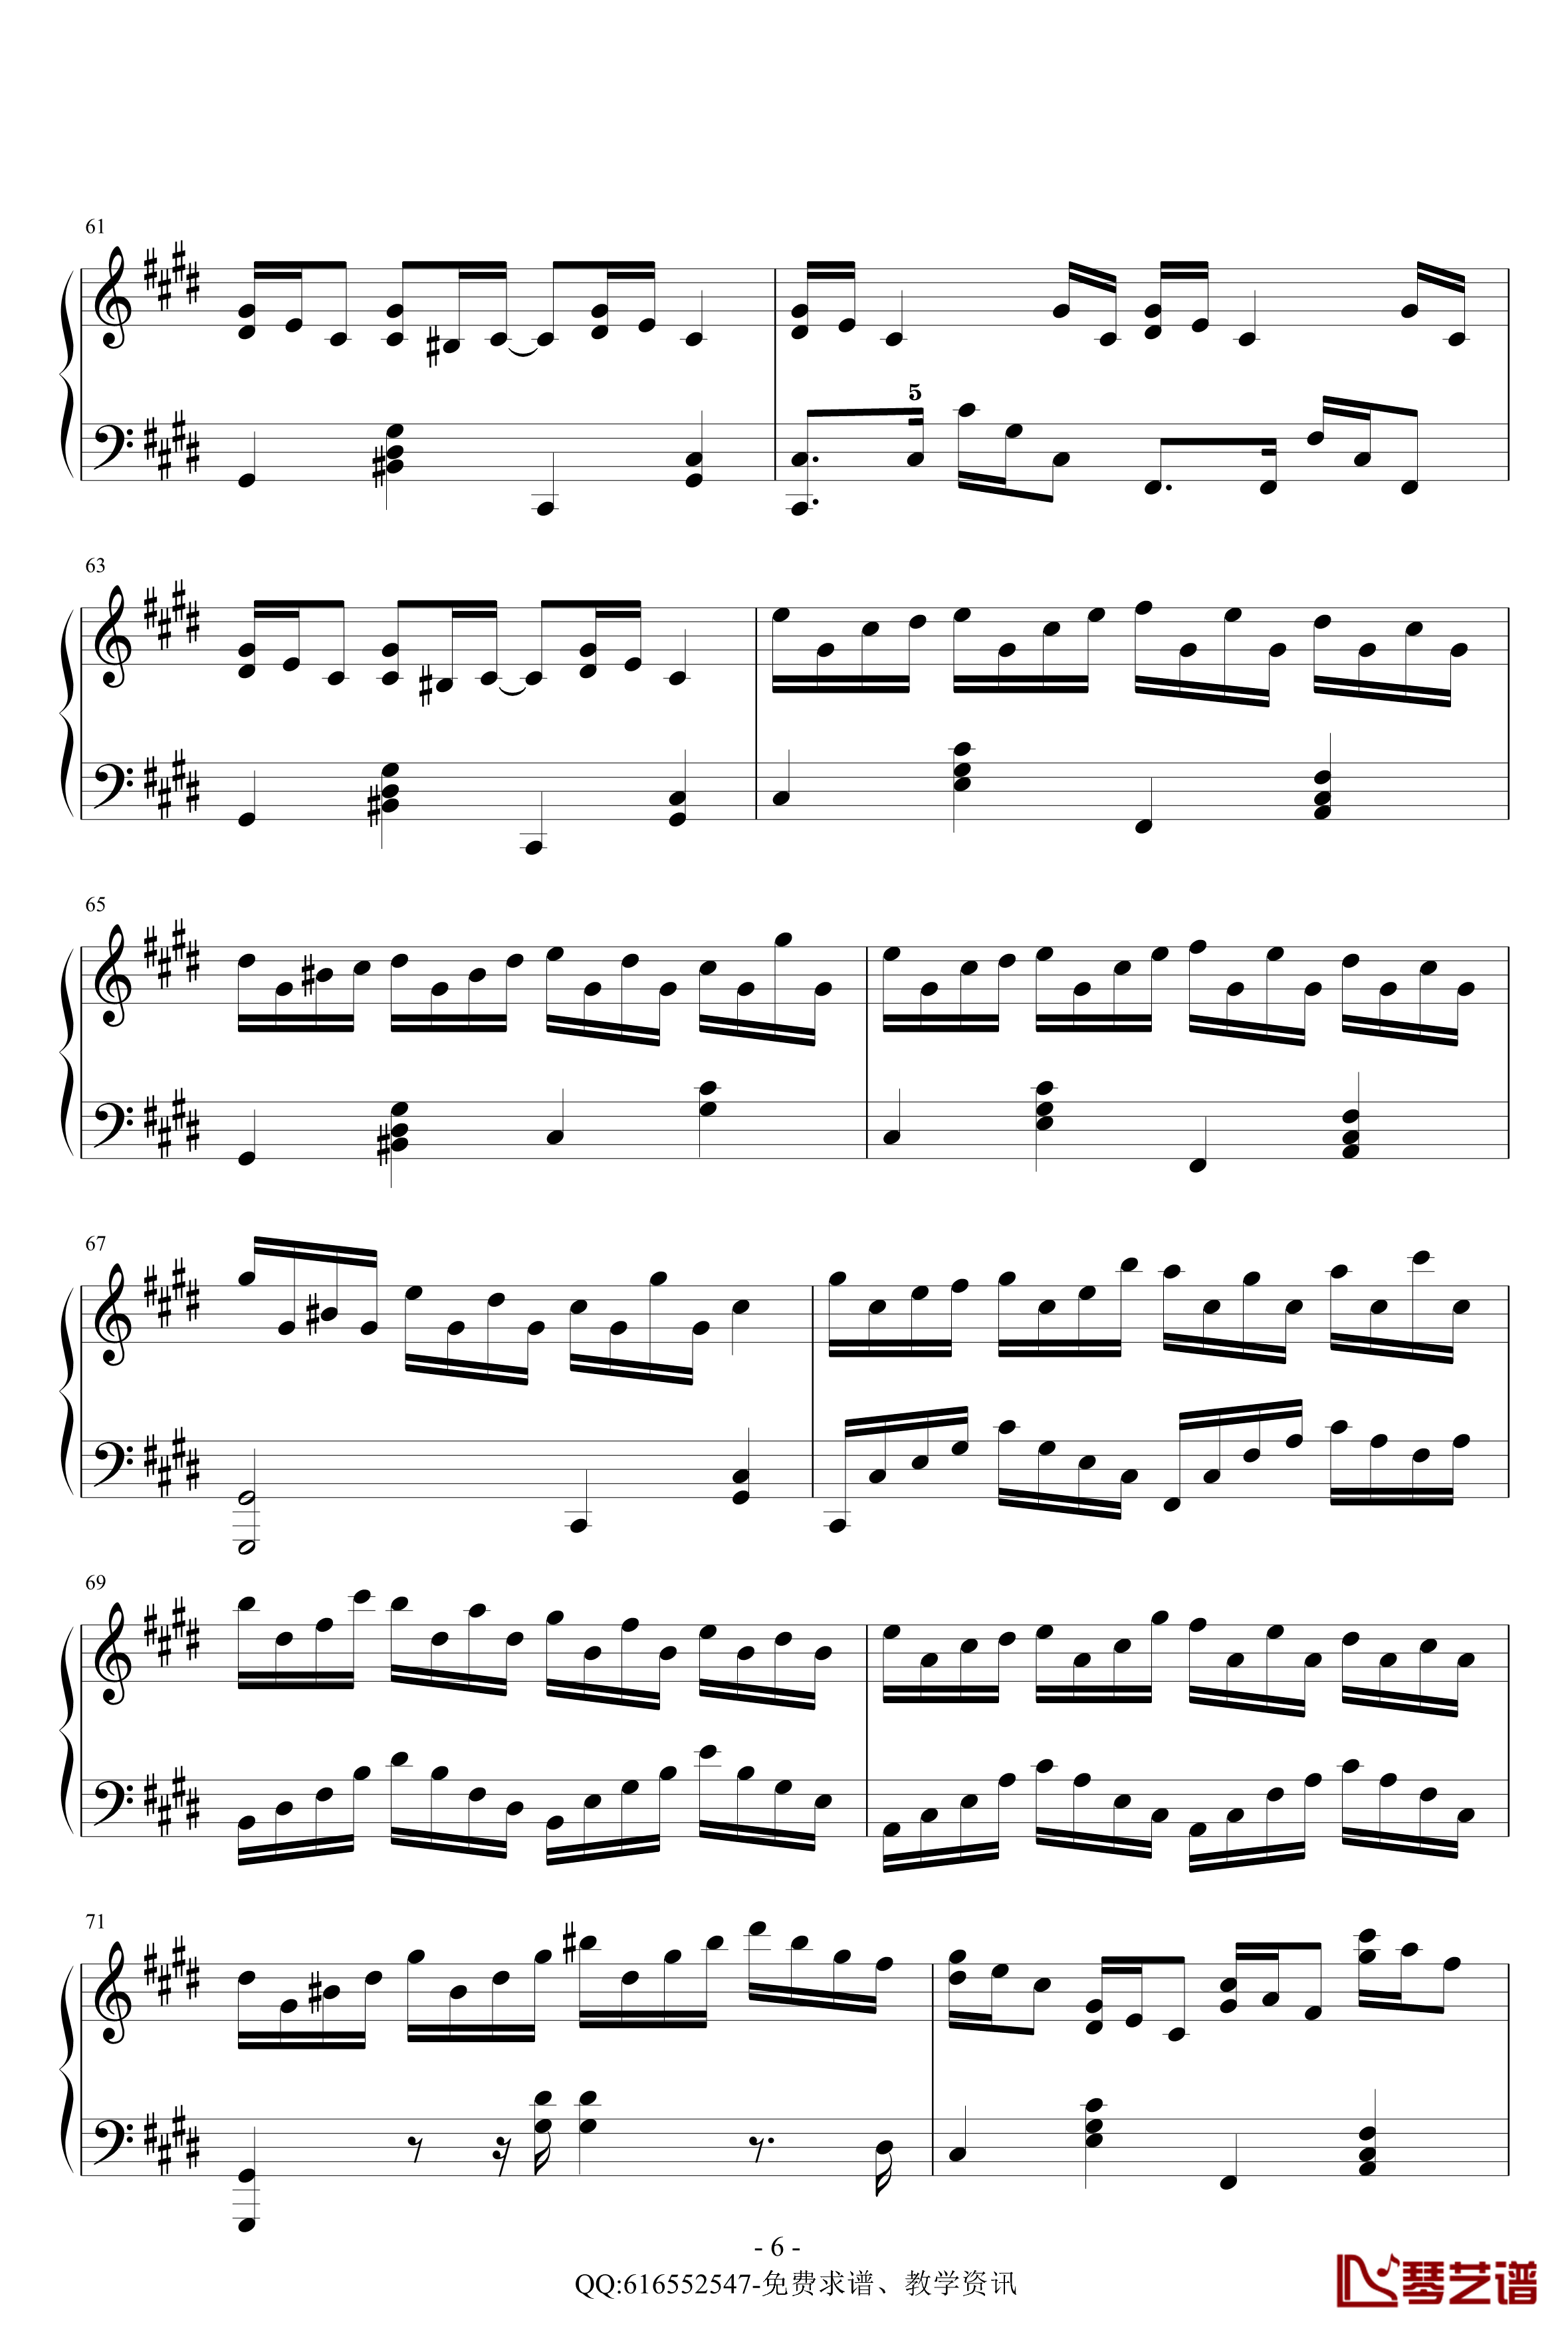 克罗地亚狂想曲钢琴谱-简化版-金龙鱼170427-马克西姆-Maksim·Mrvica6